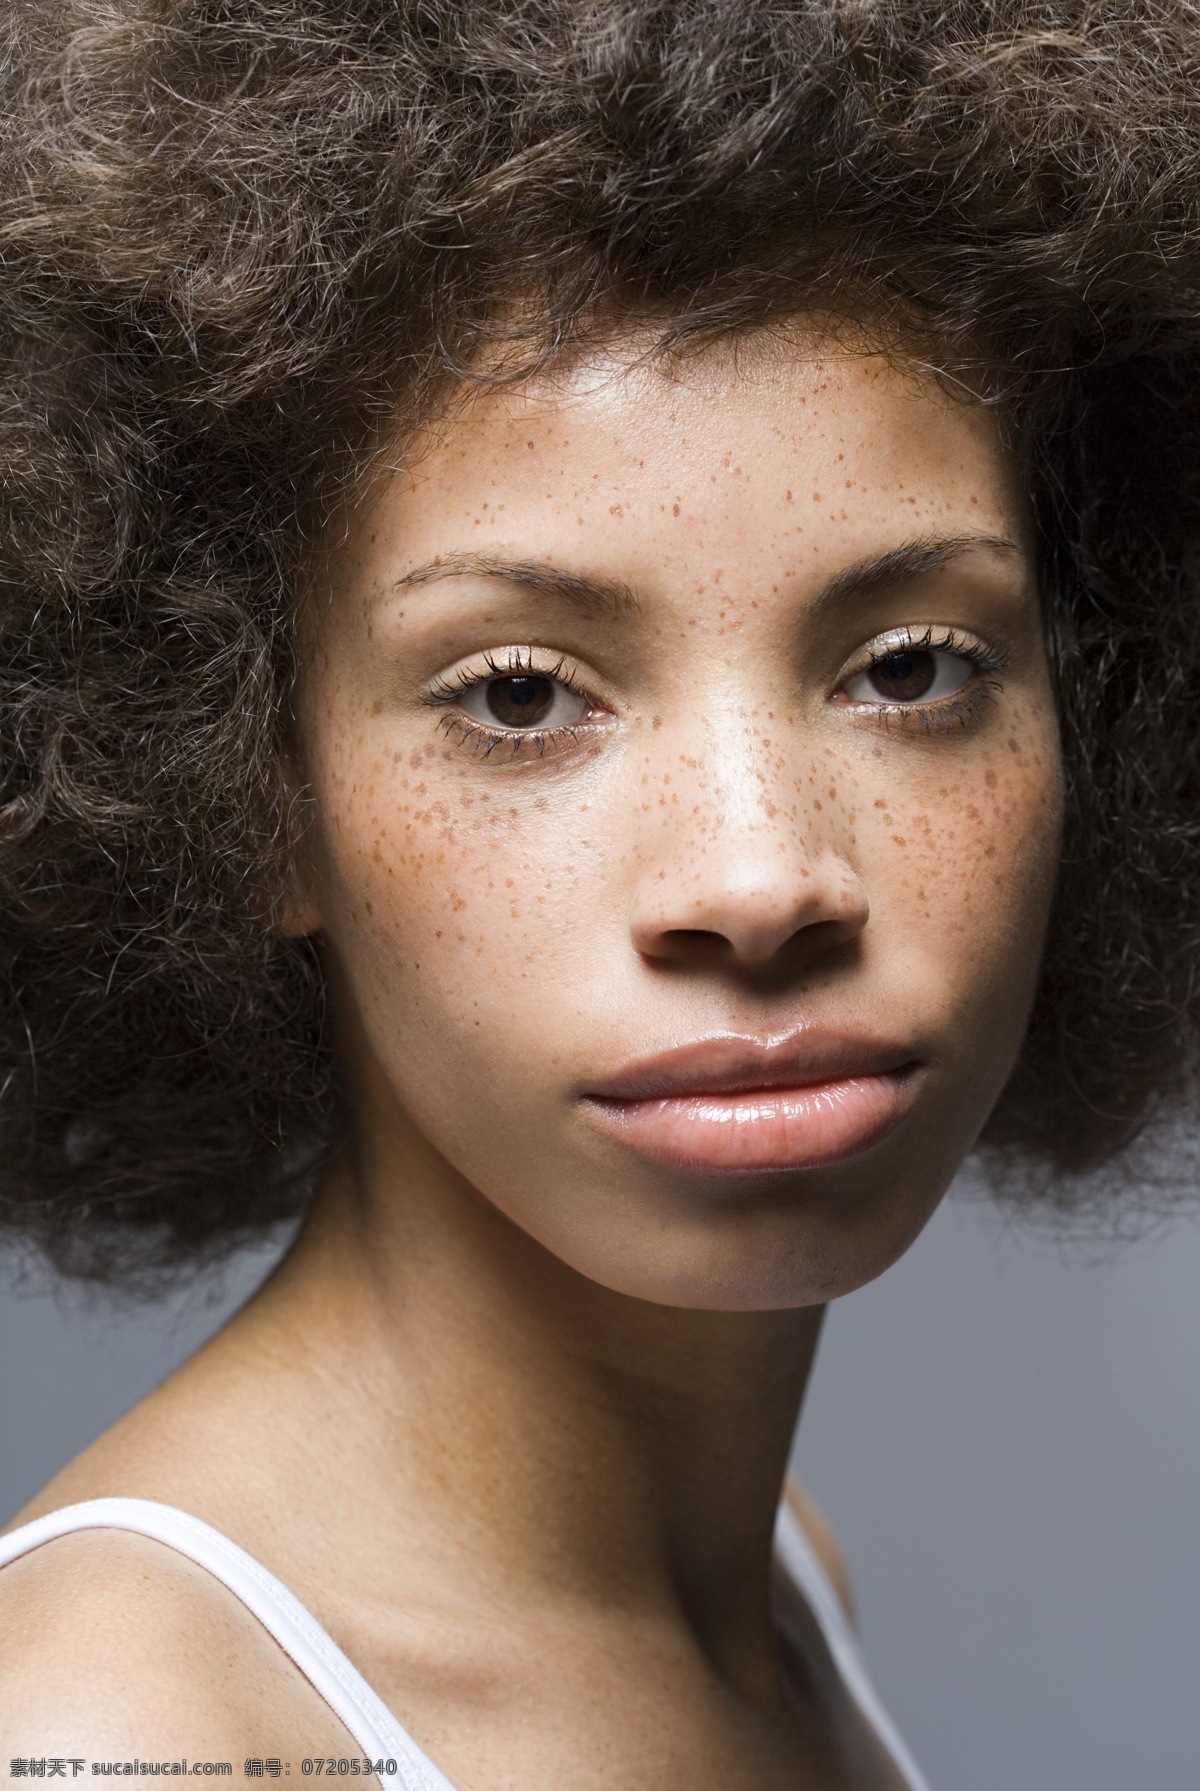 卷发 黑人 女性 面部 特写 美女 成人 妇女 欧洲美女 欧美 非洲 黑人女性 面部特写 斑点 烫发 爆炸式 发型 发型设计 造型 美容美发 高清图片 美女图片 人物图片